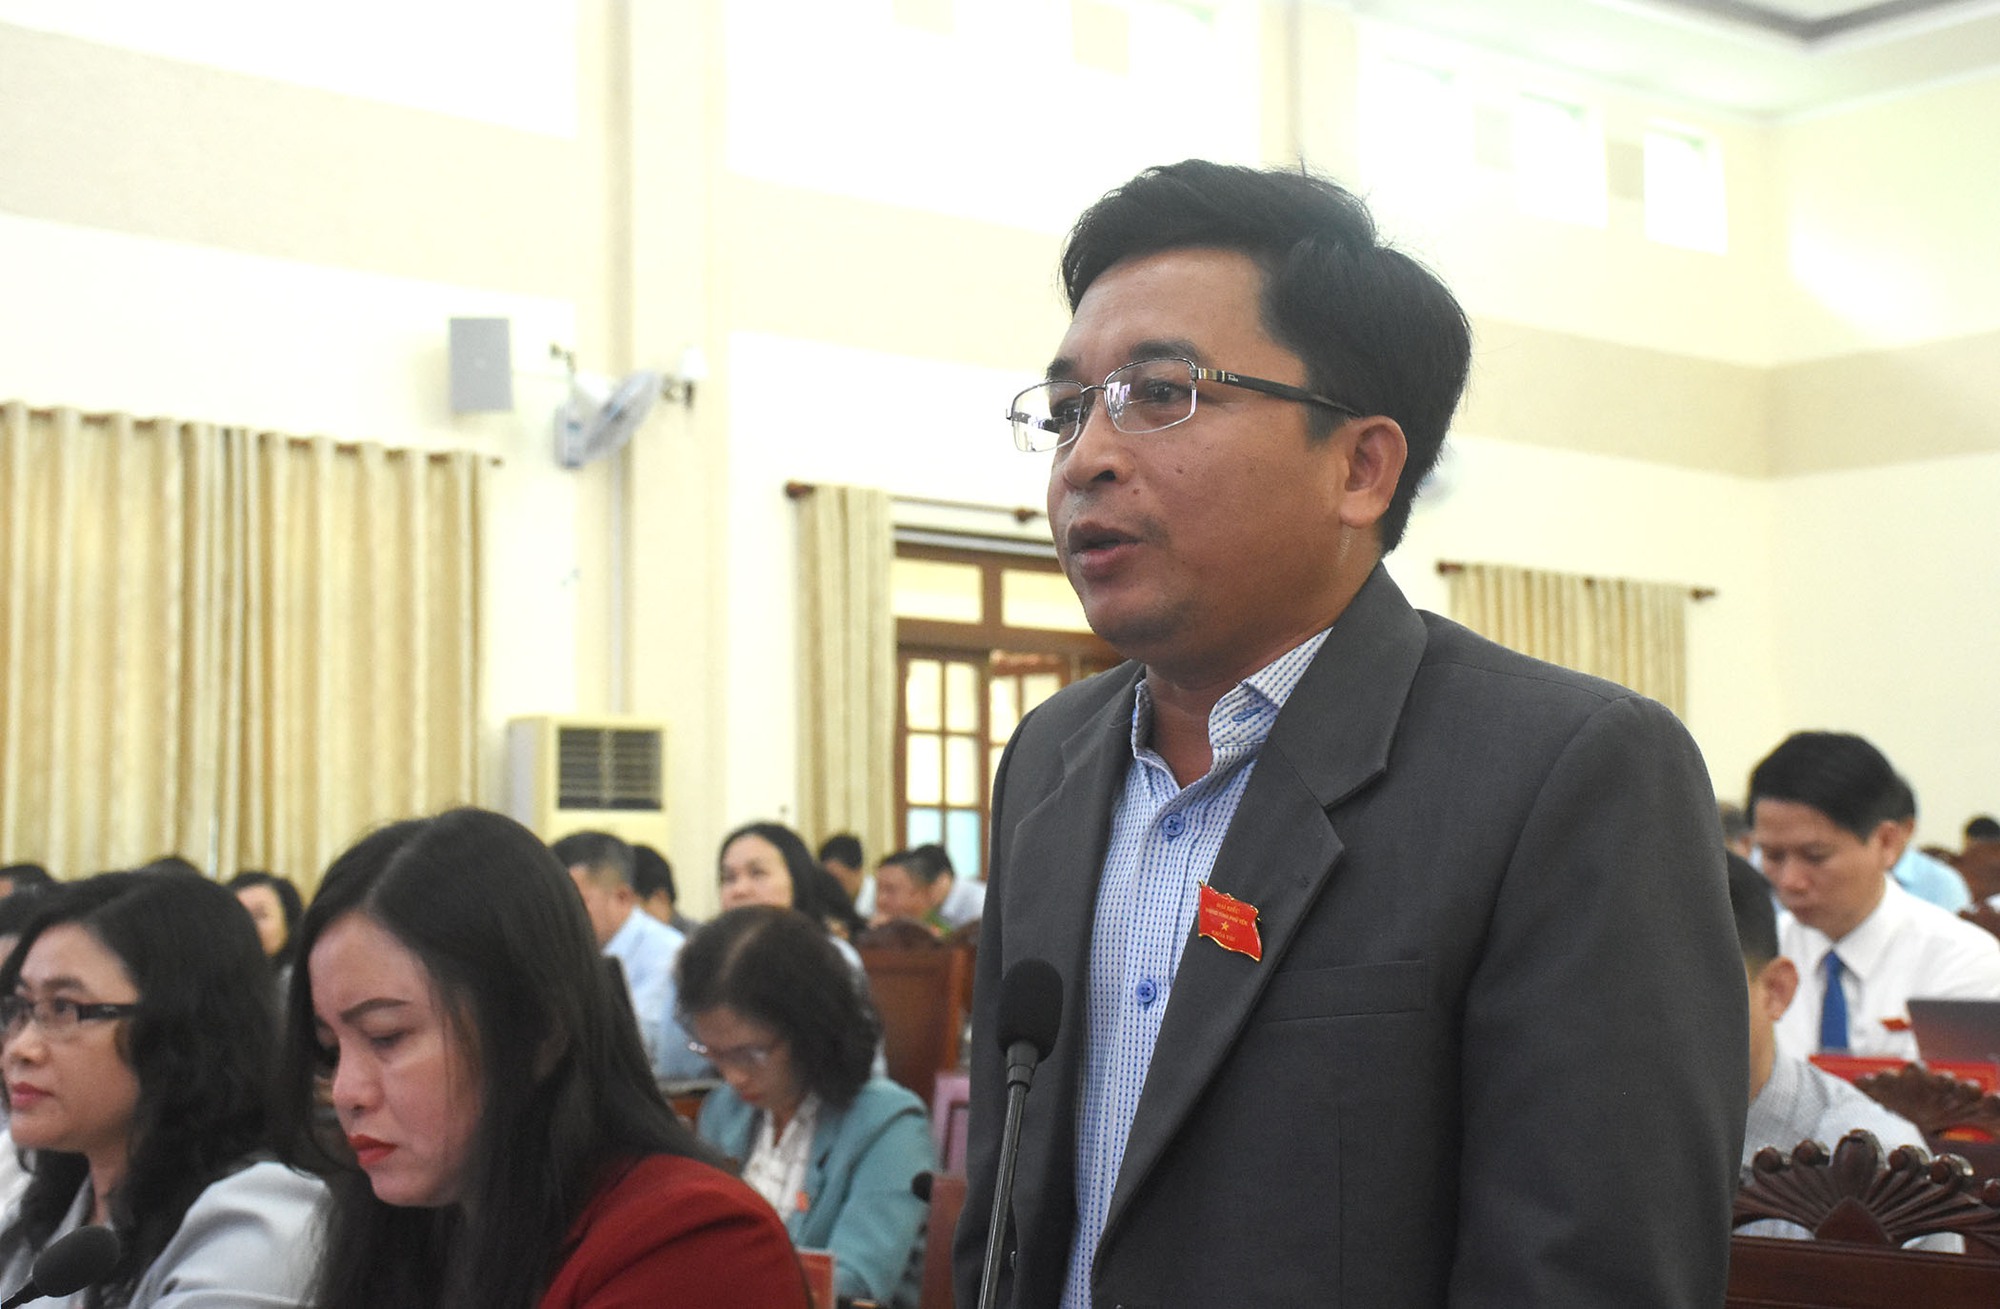 Phú Yên: Giám đốc sở nhận trách nhiệm về học sinh ‘ngồi nhầm lớp’, bệnh thành tích trong giáo dục - Ảnh 2.